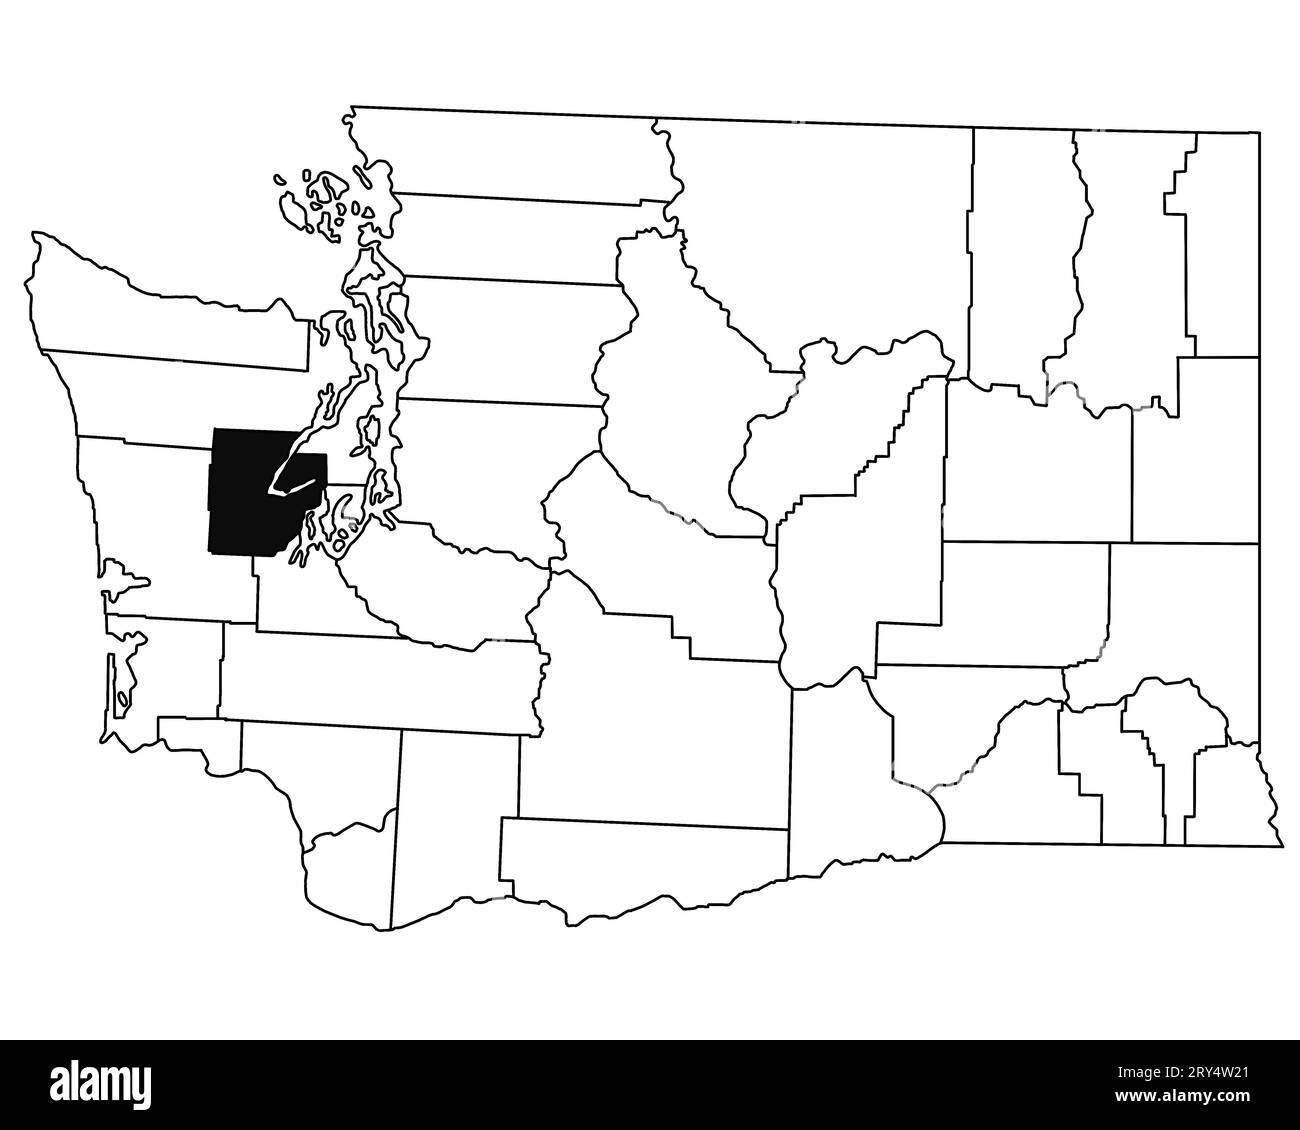 Carte du comté de Mason dans l'état de Washington DC sur fond blanc. Carte de Single County surlignée en noir sur la carte DE WASHINGTON. ÉTATS-UNIS, ÉTATS-UNIS Banque D'Images